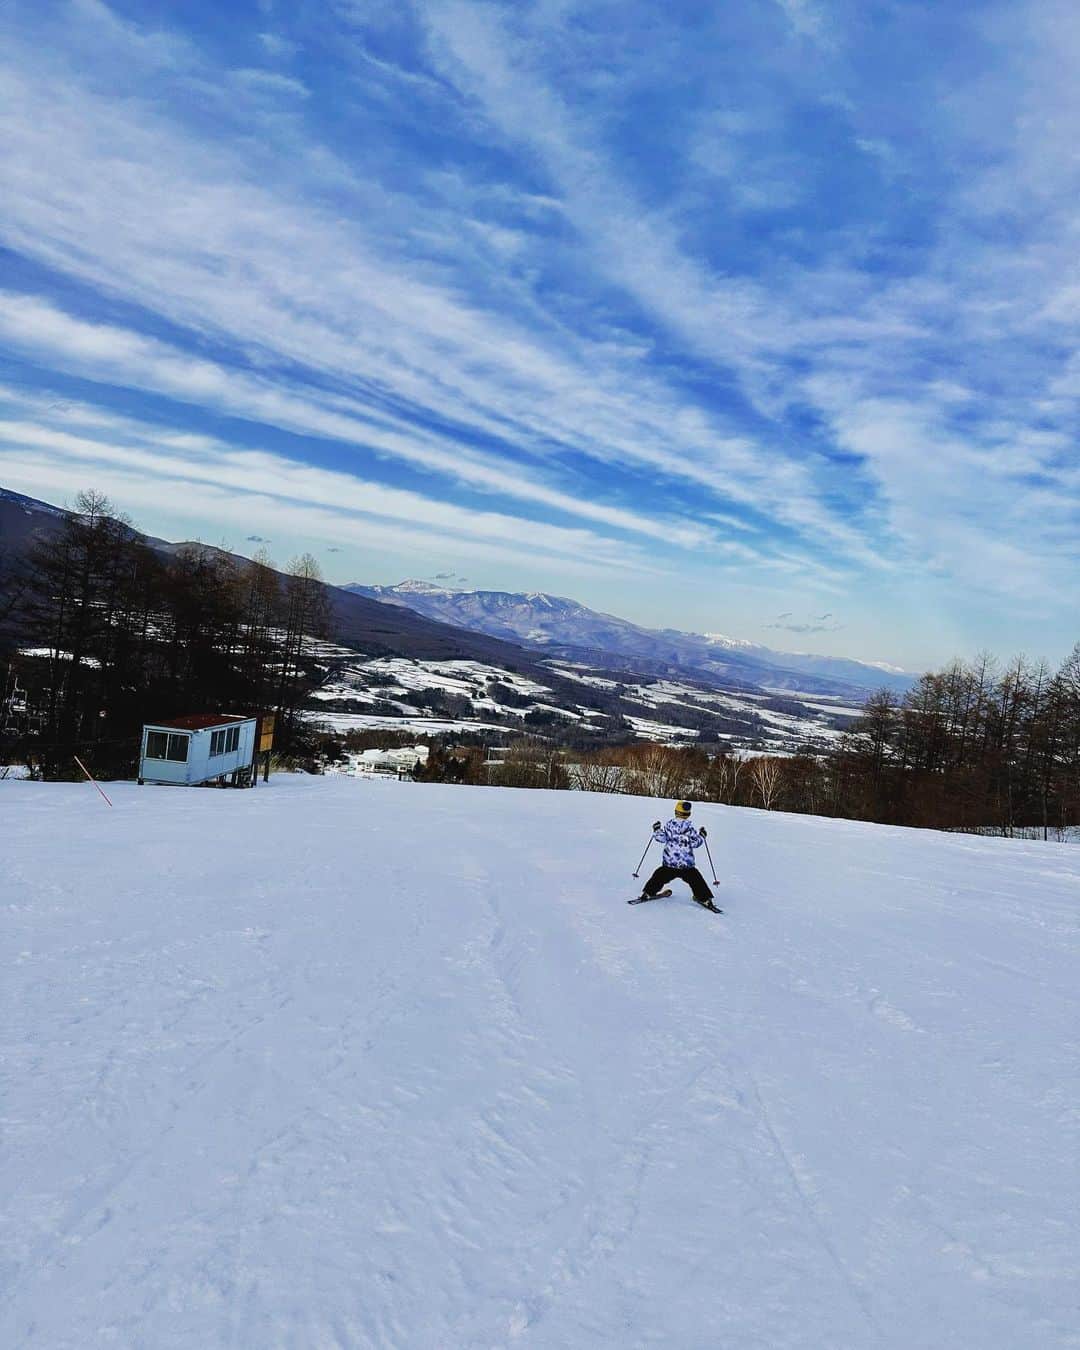 釈由美子のインスタグラム：「週末は三浦奈保子さんファミリーとスキー旅行に行きました⛷  スキーは昨年のお正月にも なおちゃんご家族と旅行で行った以来でしたが  息子はその後に、 昨年と今年の冬休みに2回。  2泊3日の子どもだけのスキー合宿に参加してきたので  1年ぶりに滑っているところを見たら ひとりで随分と滑れるようになっててビックリしました😳  赤ちゃんの頃からスキー場に遊びにきていて  板を履けるようになった3歳ごろからは 私が抱えるようにして一緒に滑ったり  転んでケガをしないか いつもヒヤヒヤしてたけど🥶  放っておいても子は育つ。 　  いや、むしろ親は過干渉にならずに 子の成長を信じて見守るぐらいがちょうどいいのかもしれませんね🥹  「ムービーを撮るからゆっくり滑ってね。」  とお願いしてたのに  こっちが追いつかないぐらいのスピードで💨  颯爽と滑り降りていく息子の背中を見つめながら  嬉しくもあり☺️ 寂しくもあり🥲  こどもの成長が早すぎます。。 🙃  #スキー #スキー旅行  #先輩ママが言ってたな #子育てなんてあっという間だよ #いまを楽しく大切に」